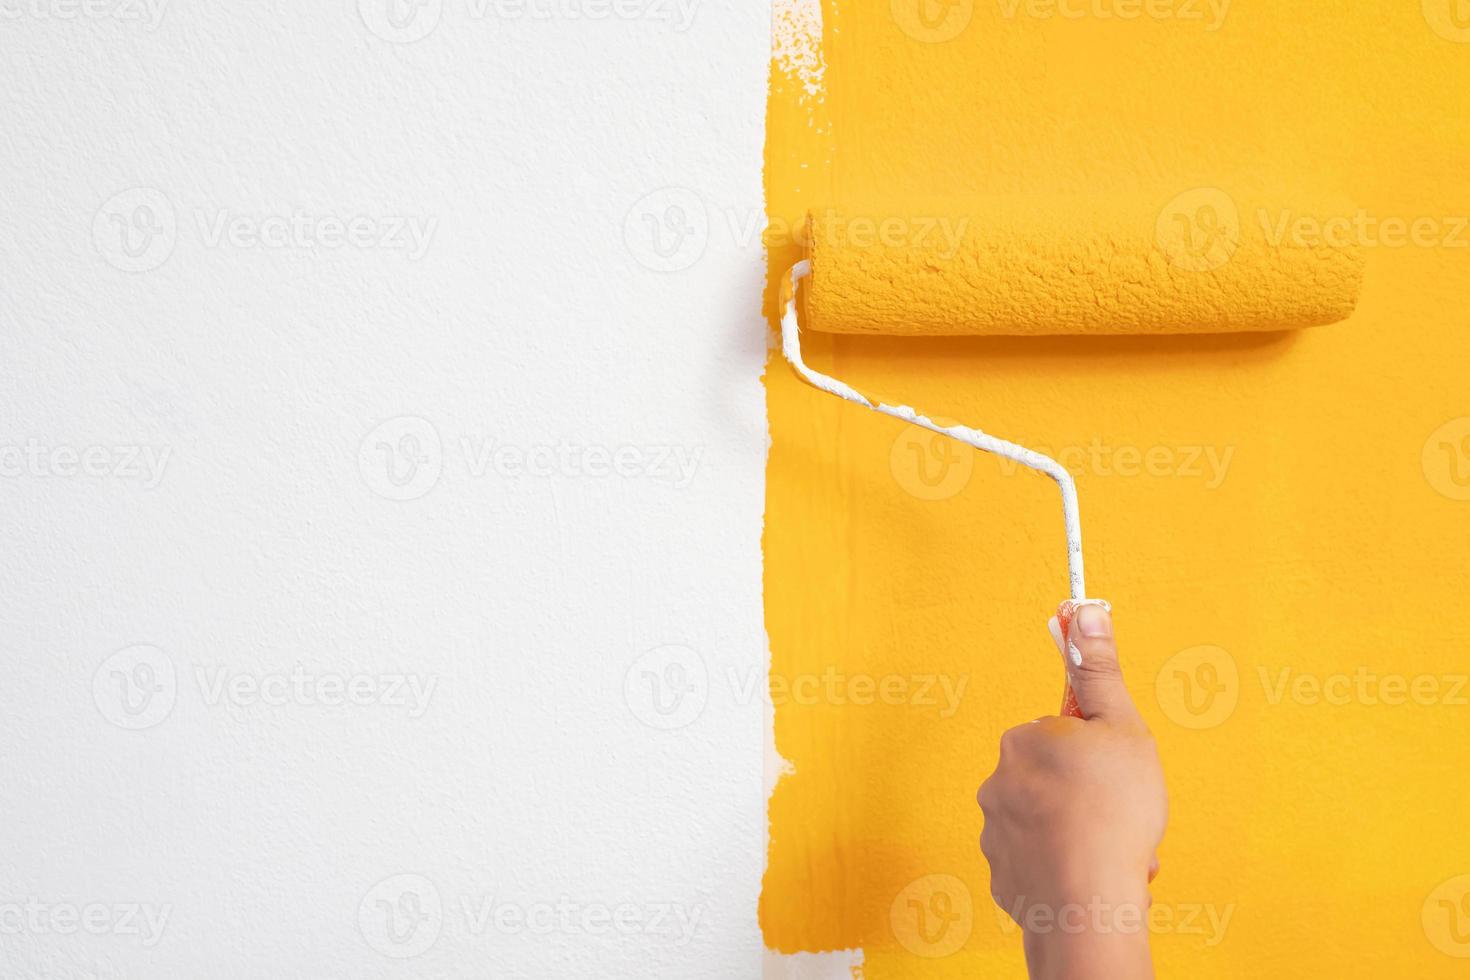 le mécanicien peint du jaune sur le mur. photo